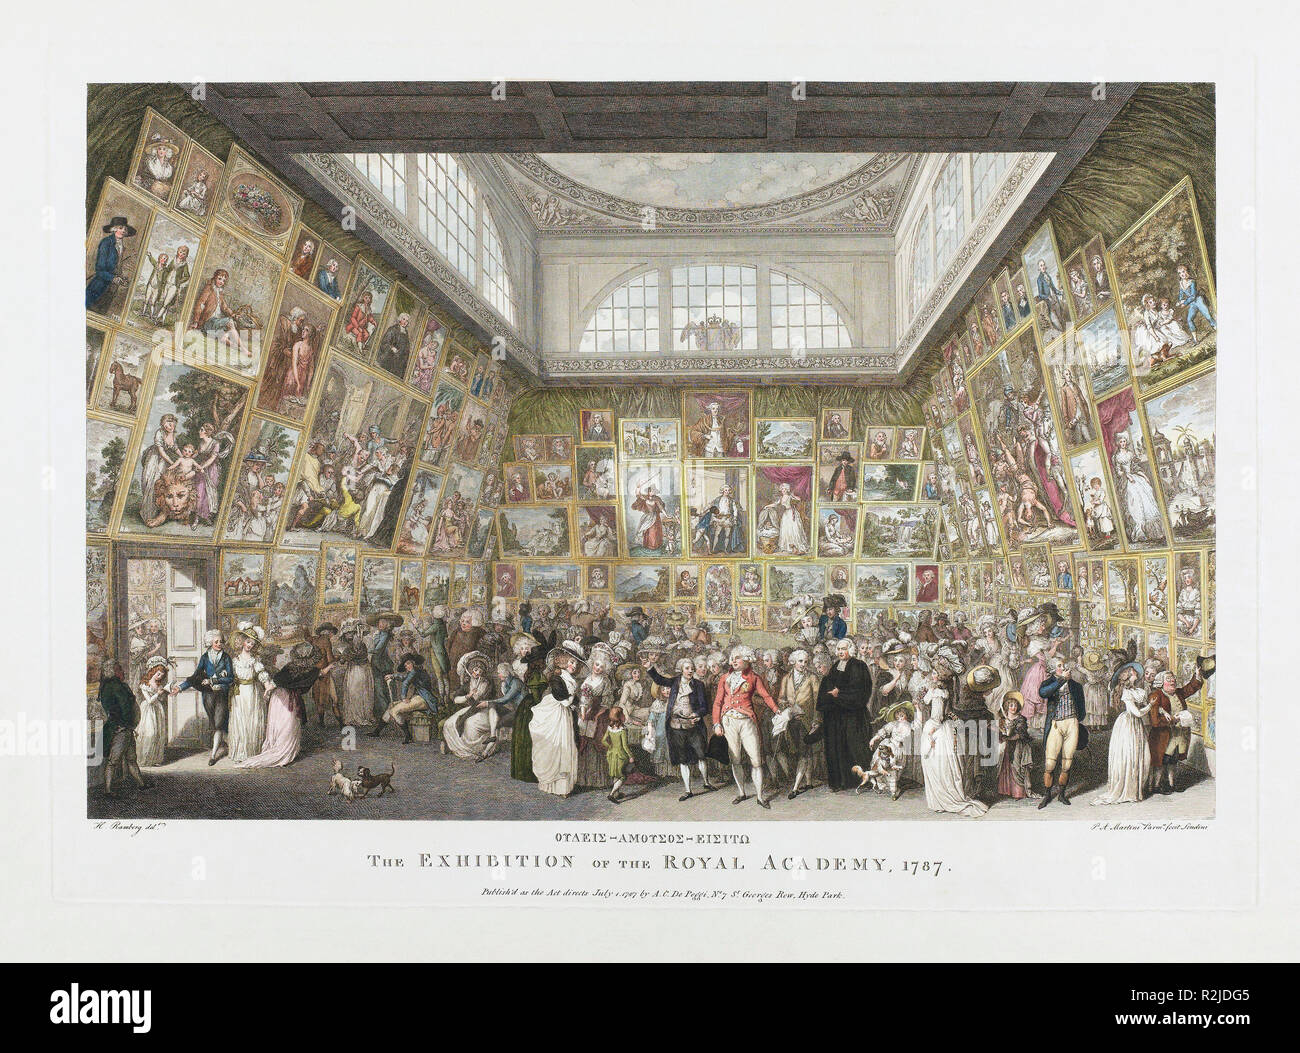 Die Ausstellung der Königlichen Akademie, 1787. Nach einem zeitgenössischen Kupferstich. Nach einem Werk des italienischen Künstlers Pietro Antonio Martini, 1738 - 1797. Stockfoto